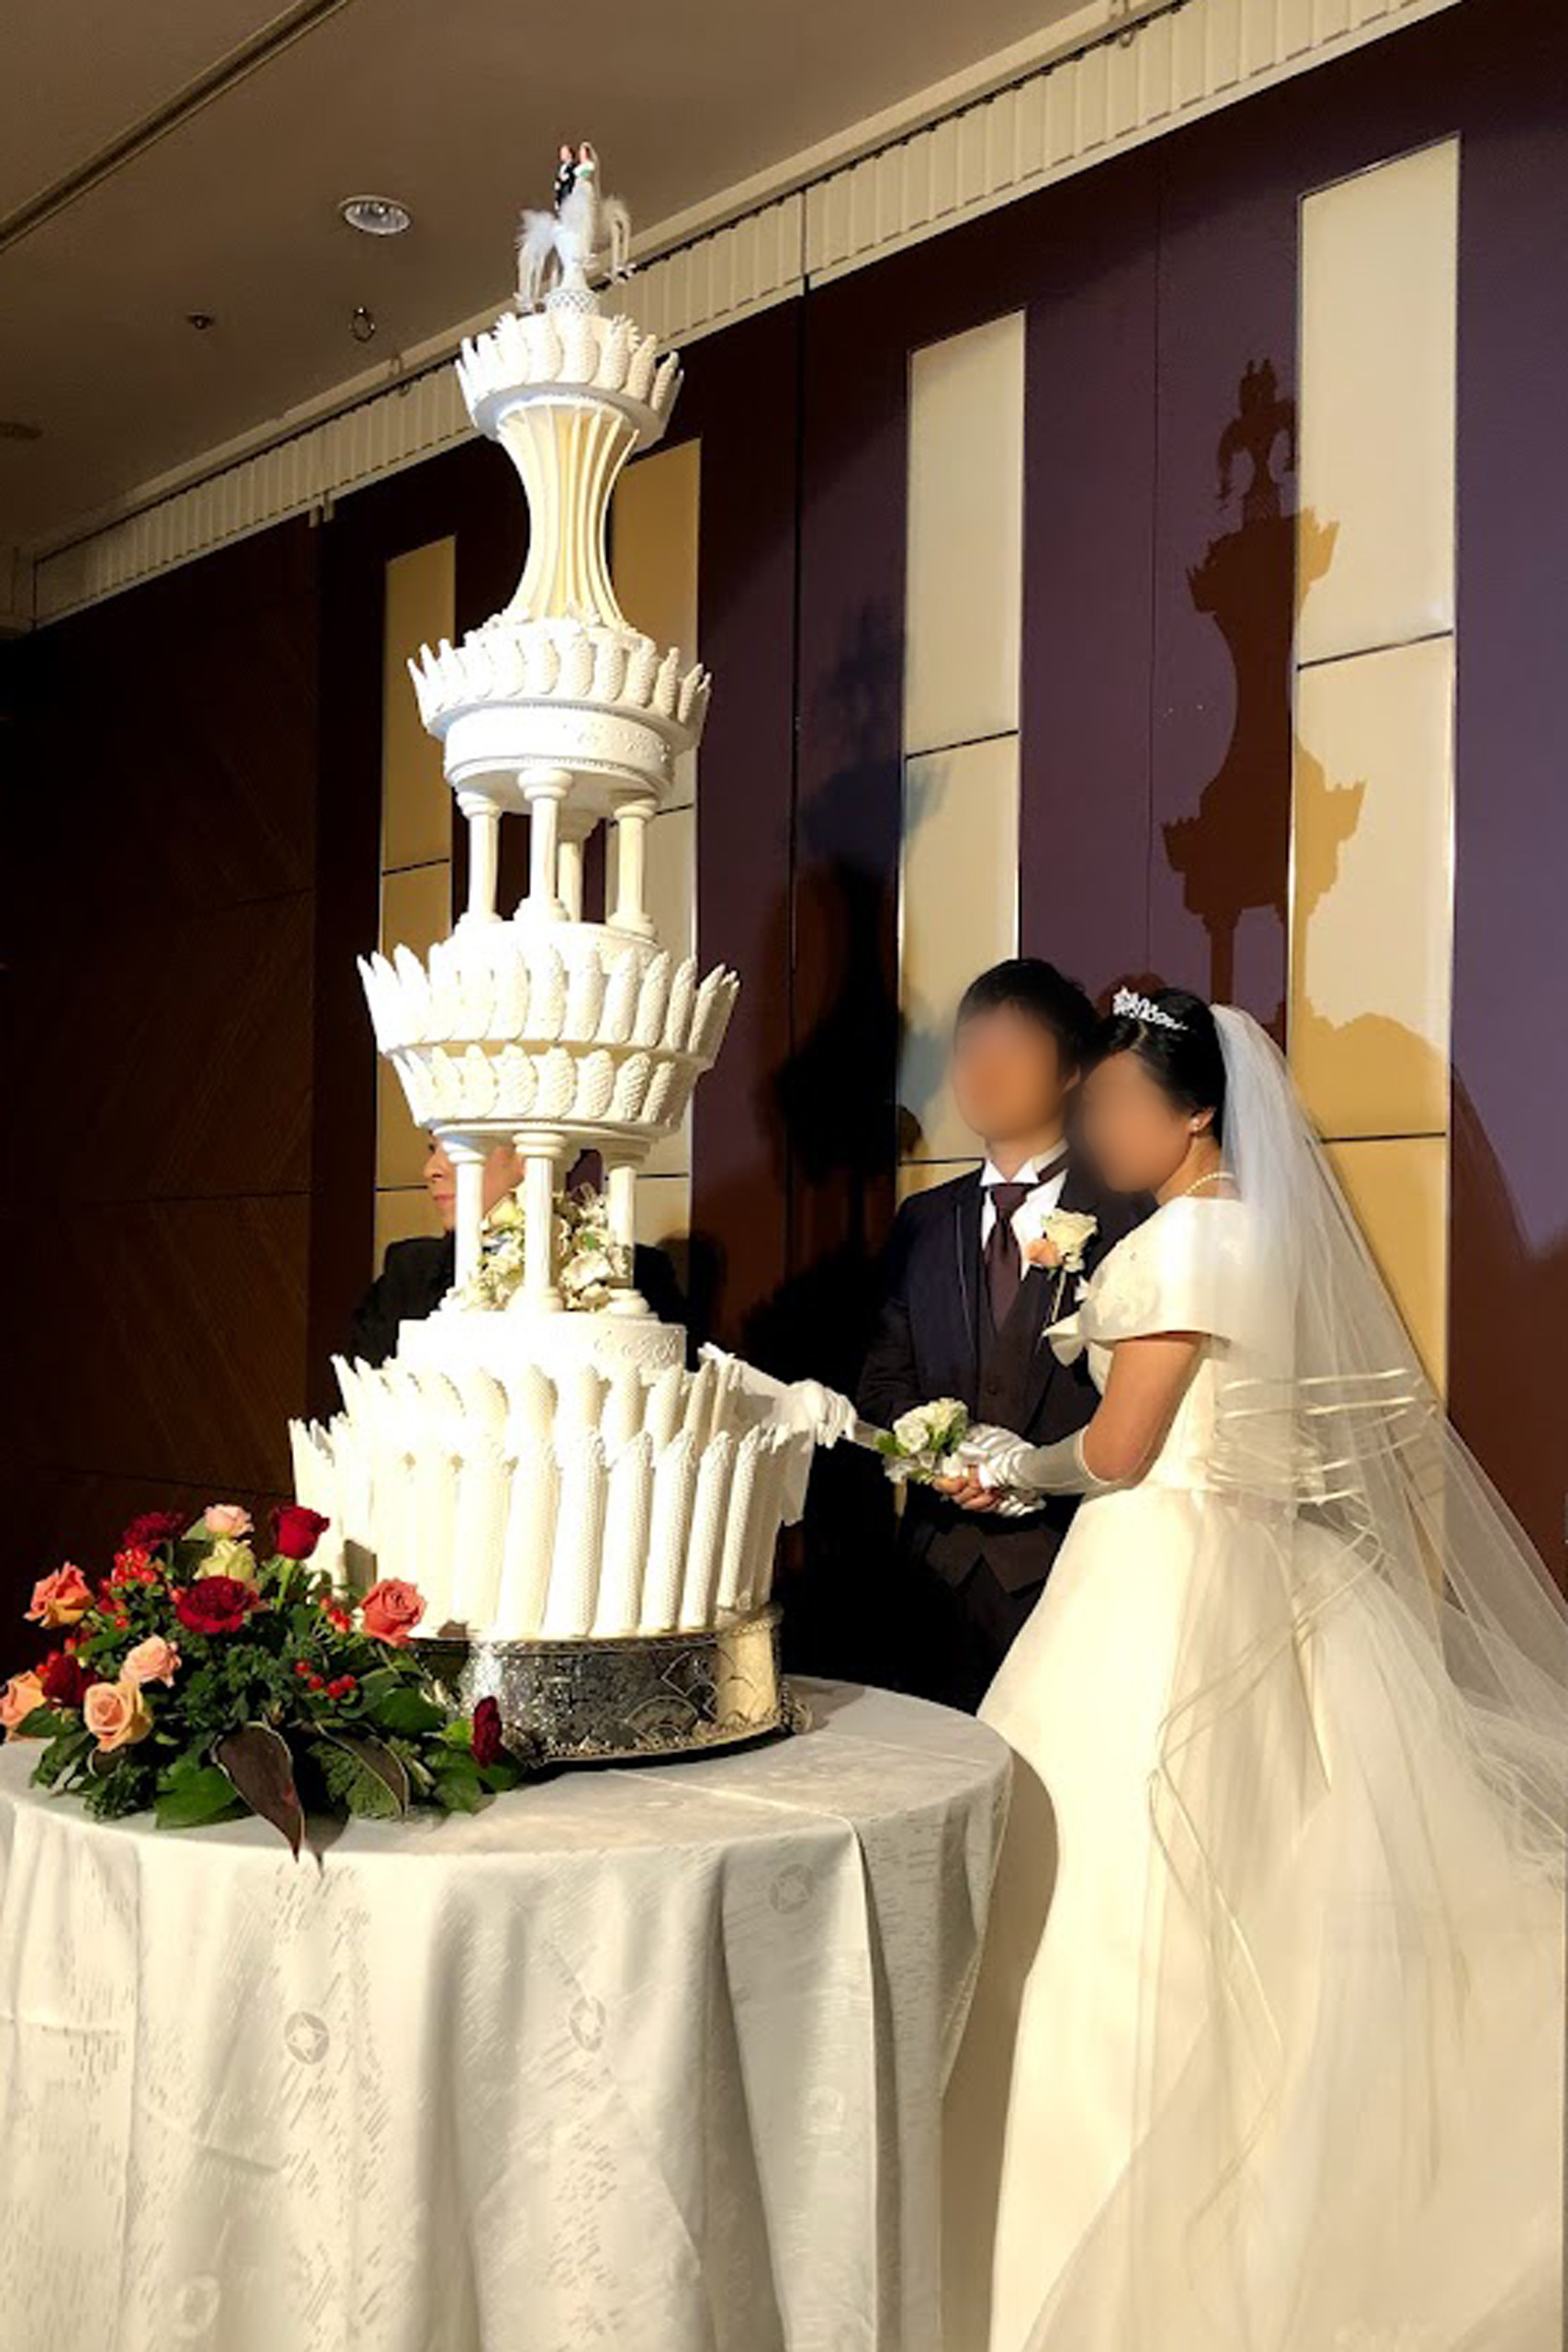 ray masaki, 레이 마사키, 화이트 웨딩, 결혼식